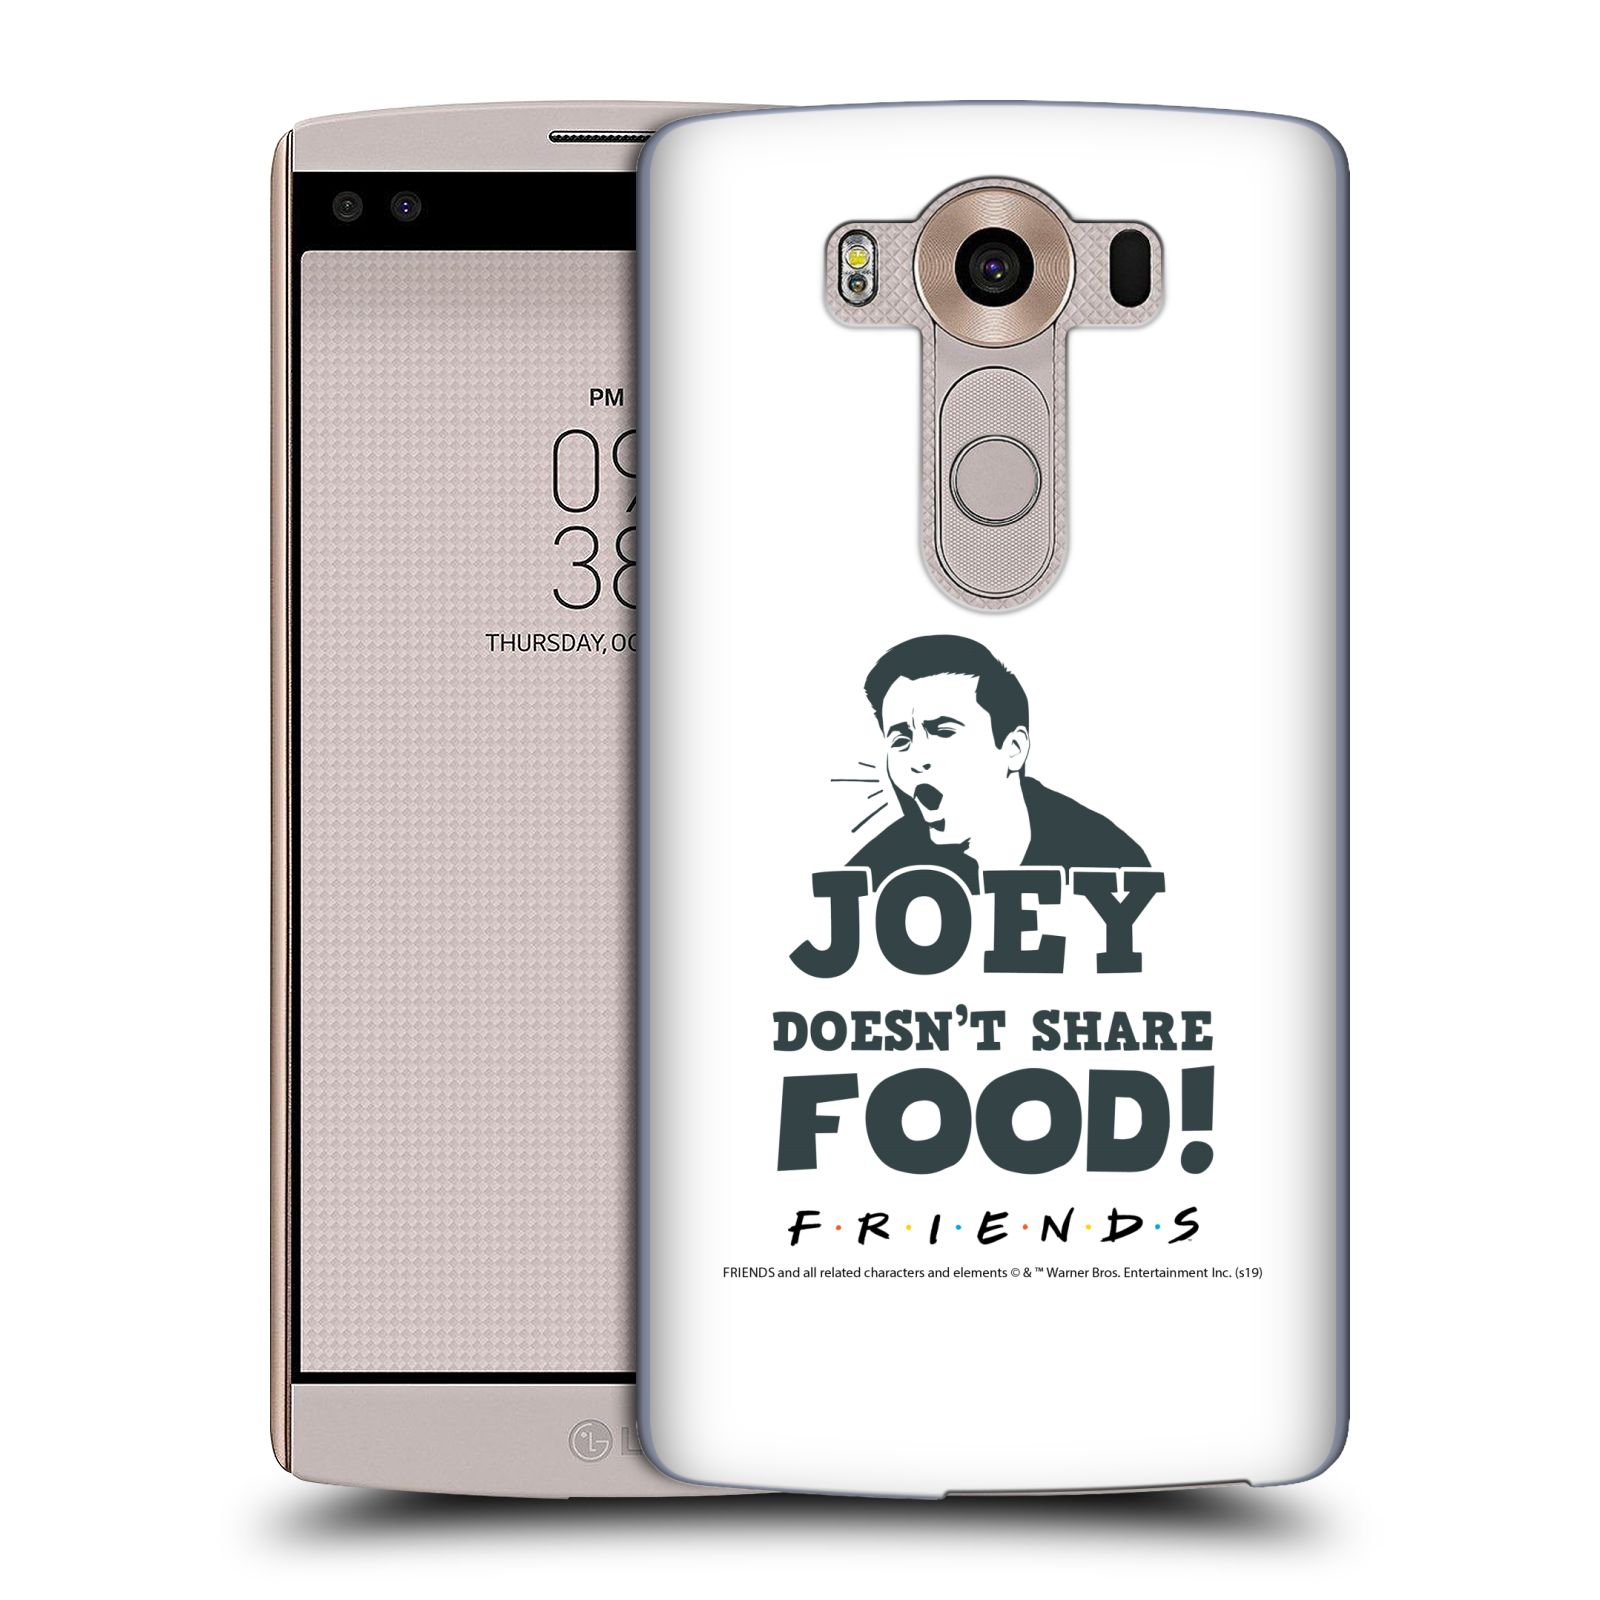 Pouzdro na mobil LG V10 - HEAD CASE - Seriál Přátelé - Joey se o jídlo nedělí